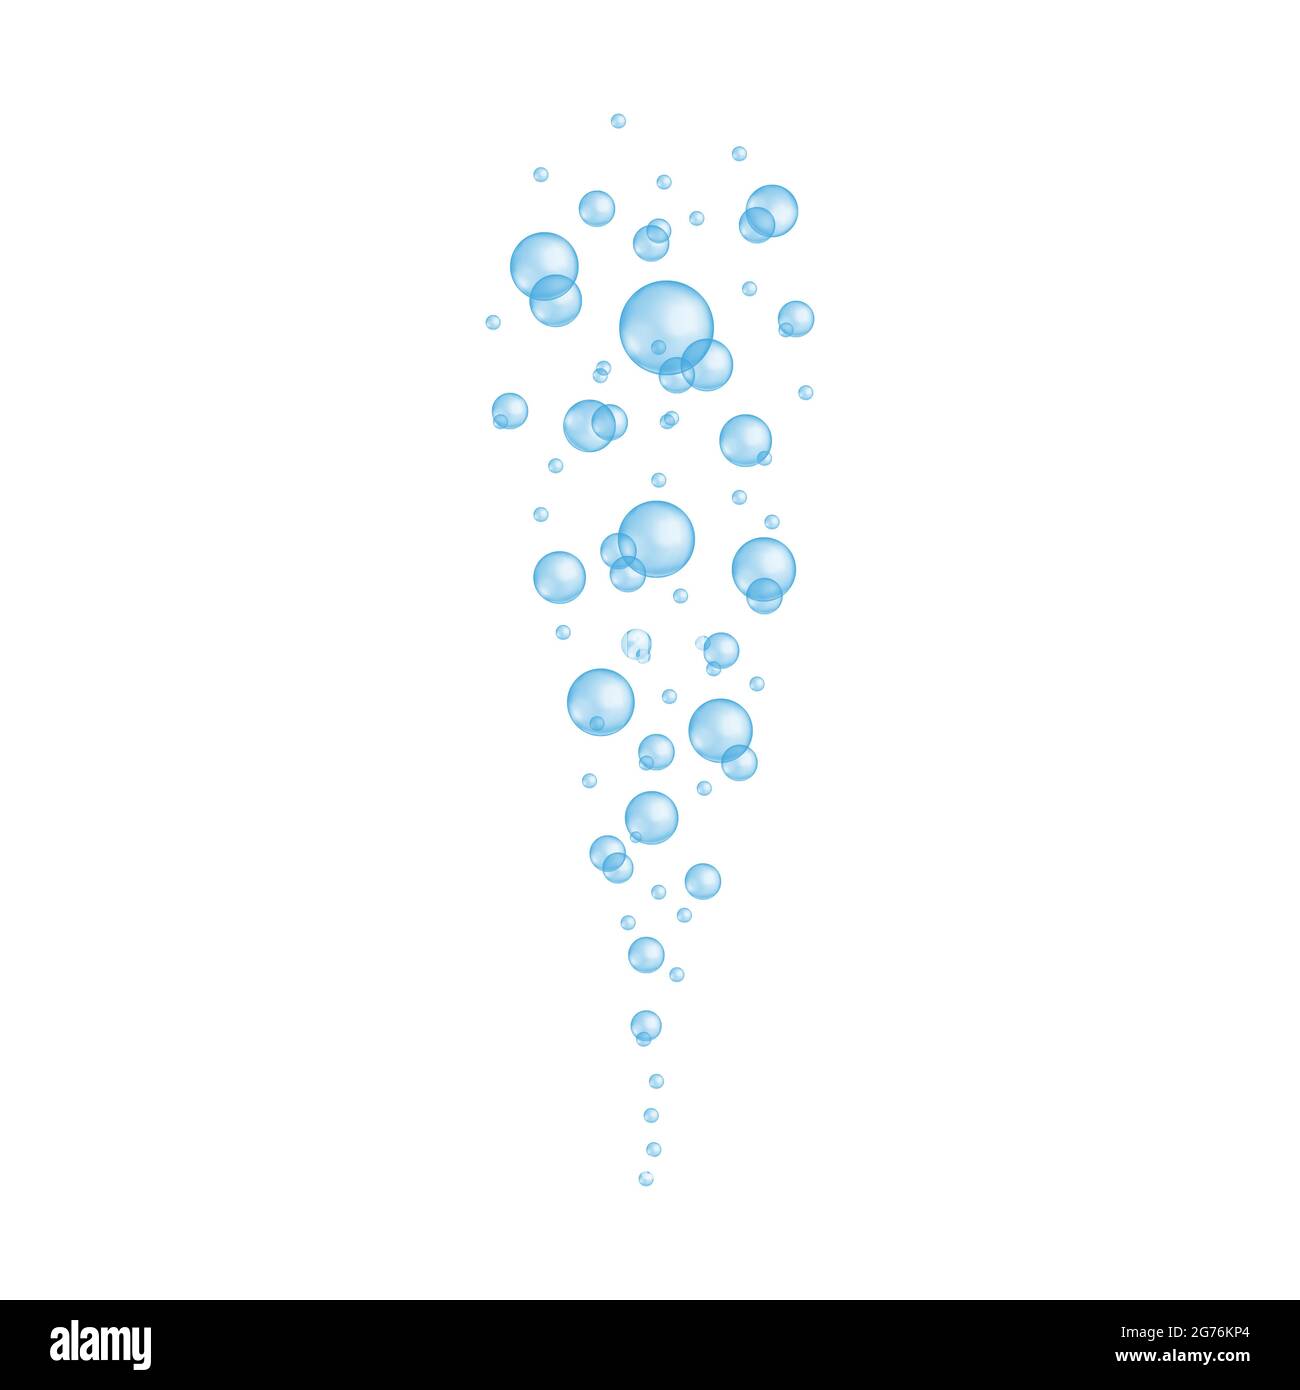 Blaue transparente Blasen. Wirkung von kohlensäurehaltigem Wasser, Seife oder Reinigungsschaum, Aquarium oder Meersauerstoffstrom, Bad sud. Vektor-realistische Darstellung. Stock Vektor